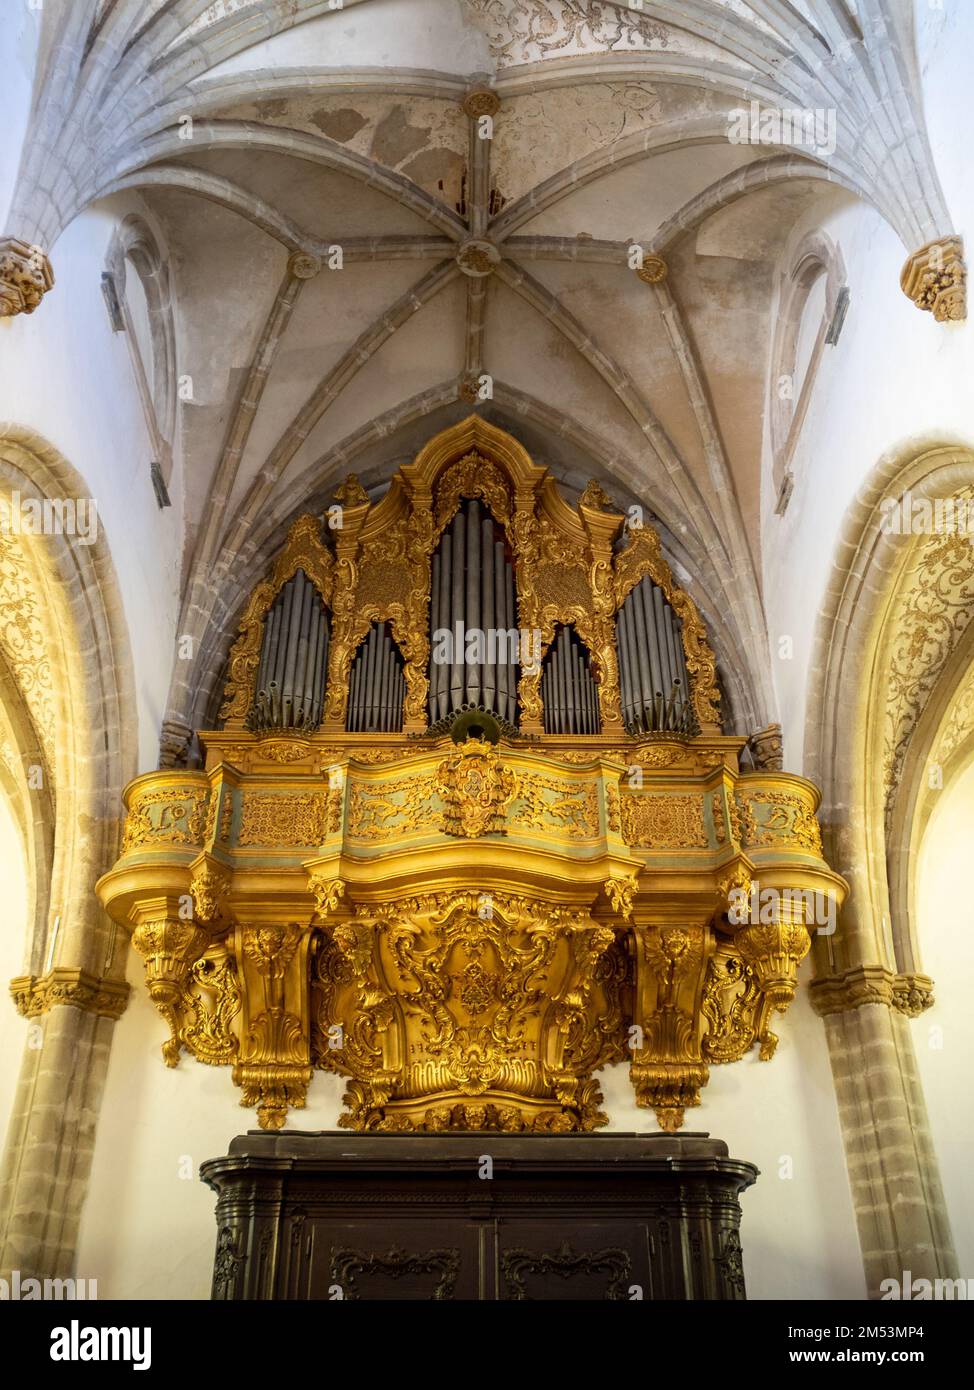 Golden organ of Igreja de Nossa Senhora da Assunção, Elvas Stock Photo